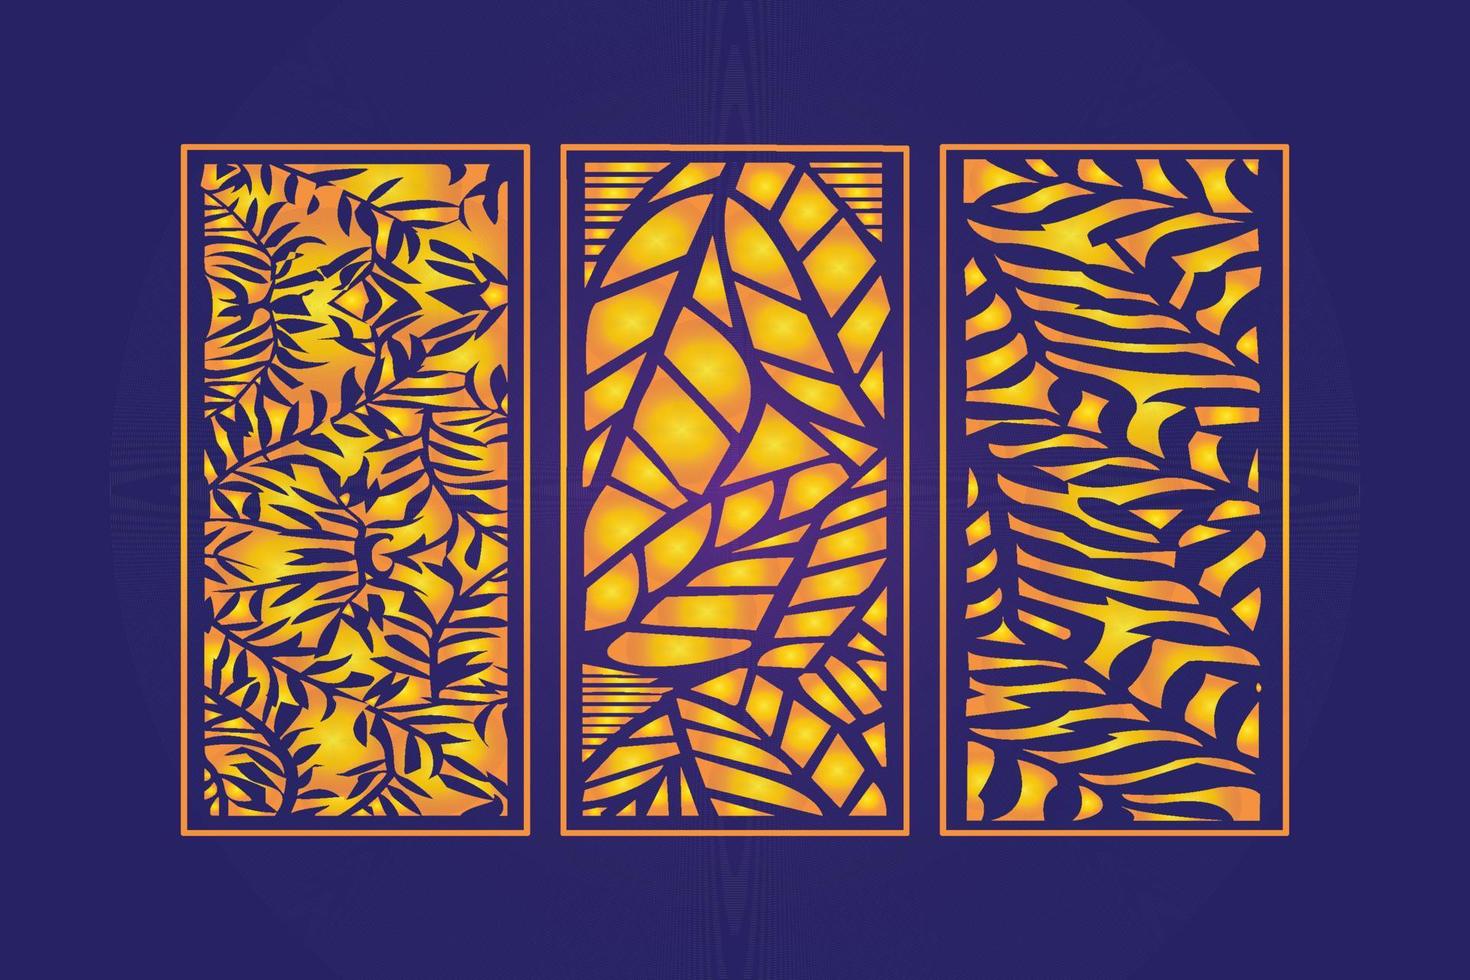 decoratief dood gaan besnoeiing bloemen Islamitisch abstract patroon laser besnoeiing panelen sjabloon goud vector